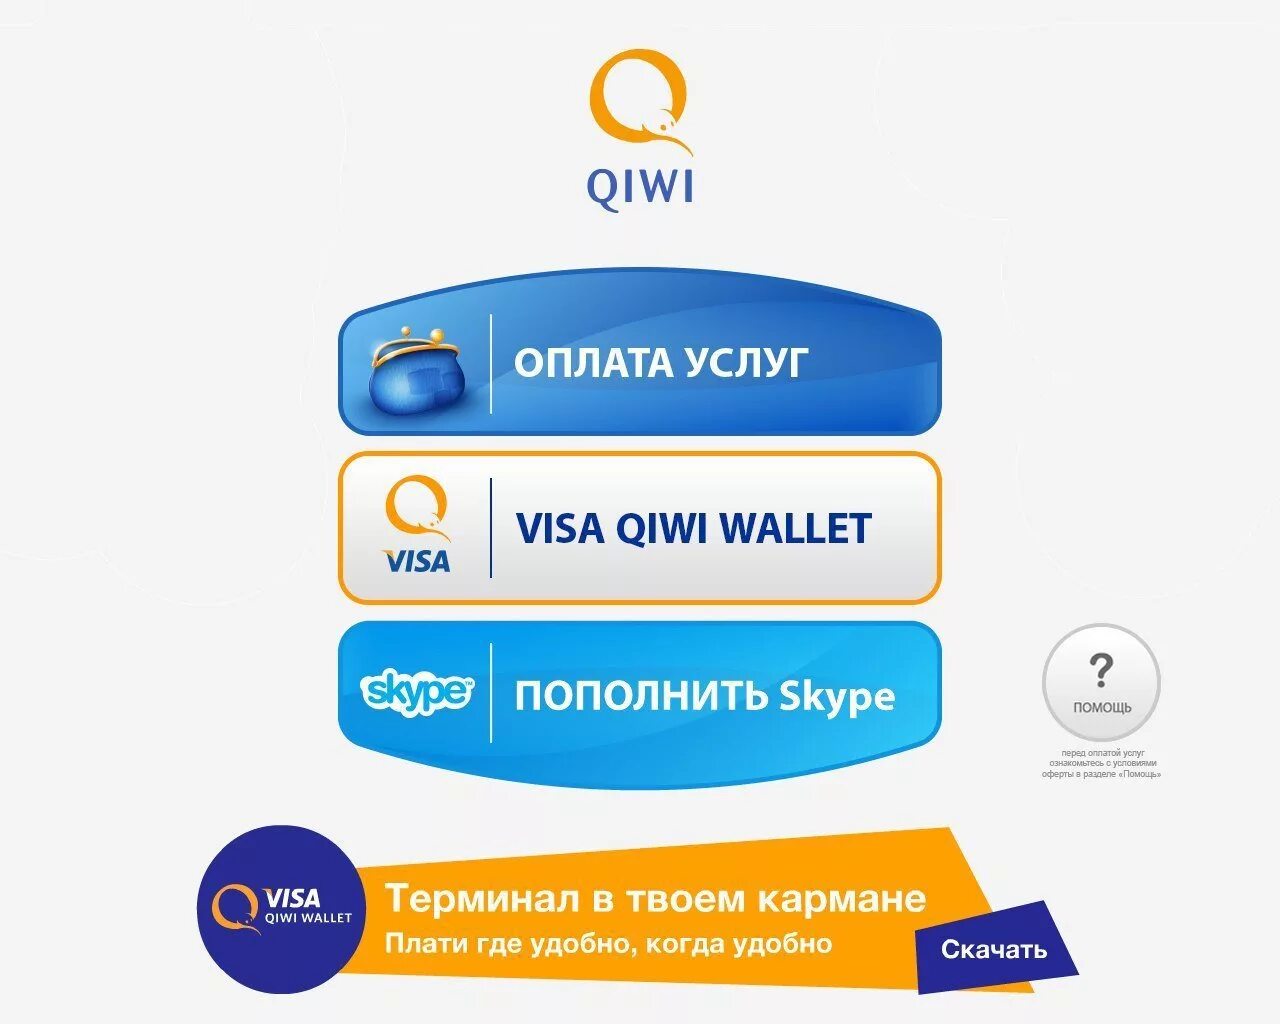 QIWI кошелек. Киви электронный кошелек. Киви виза. Visa QIWI Wallet пополнение. Visa qiwi